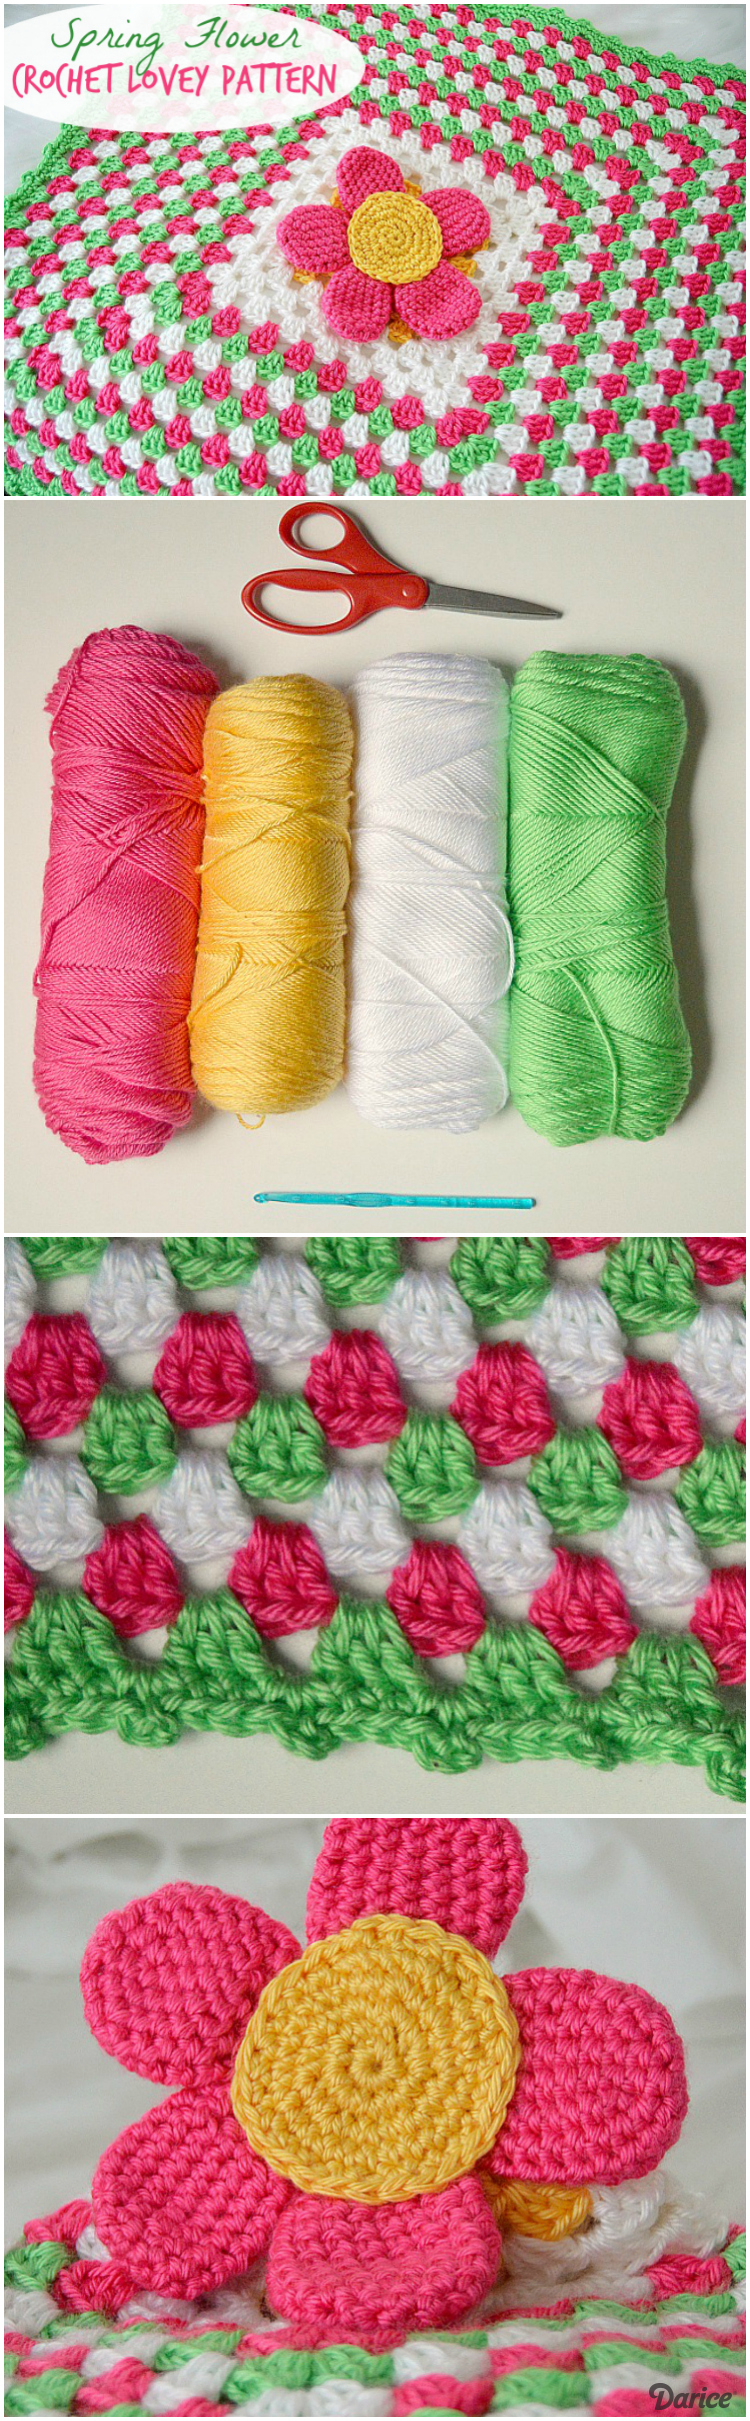 Free Crochet Lovey Pattern Crochet Lovey Pattern Spring Flower Ba Blanket Darice